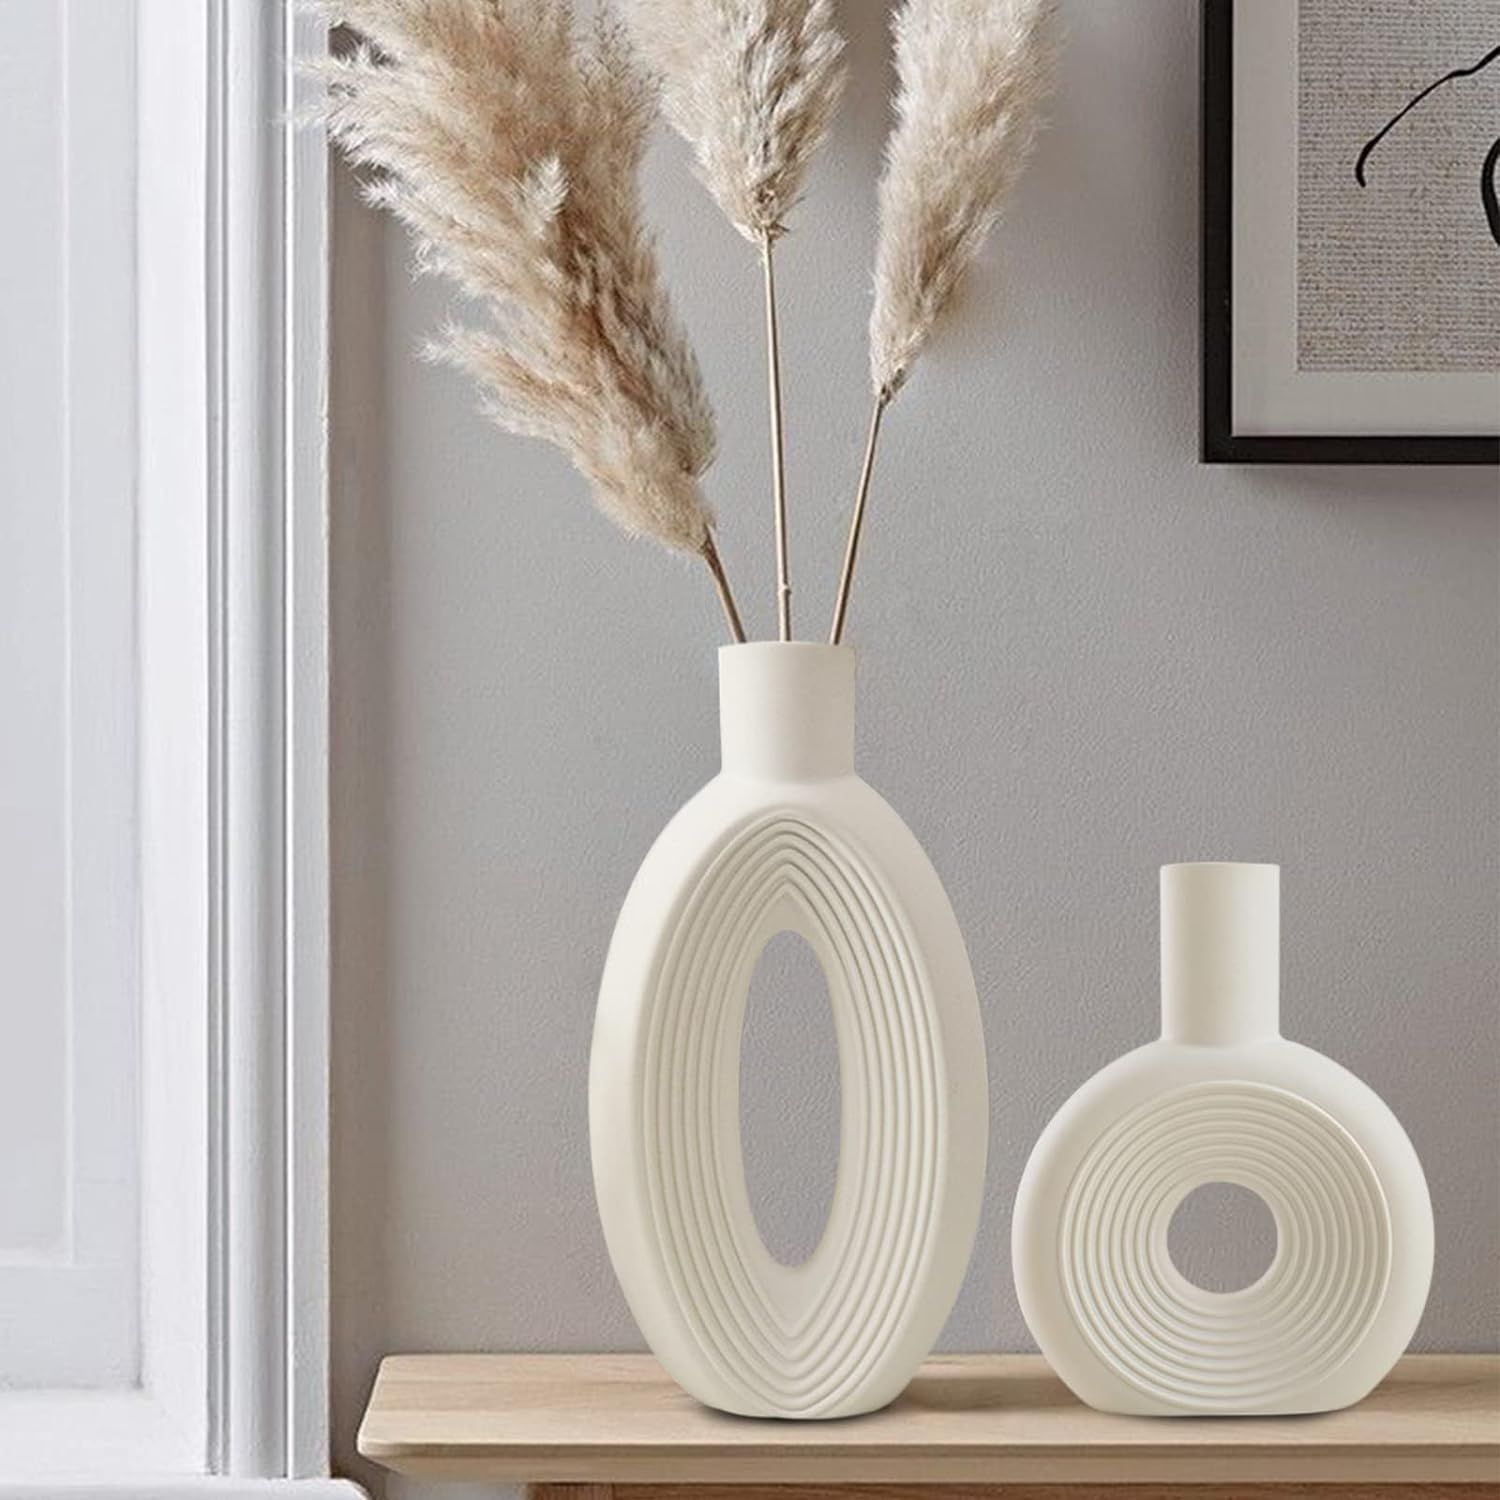 Ceramic Vase - Set of 2 for Home Decor,White Round Pampas Vases Minimalist Nordic Boho Style for ... | Amazon (US)